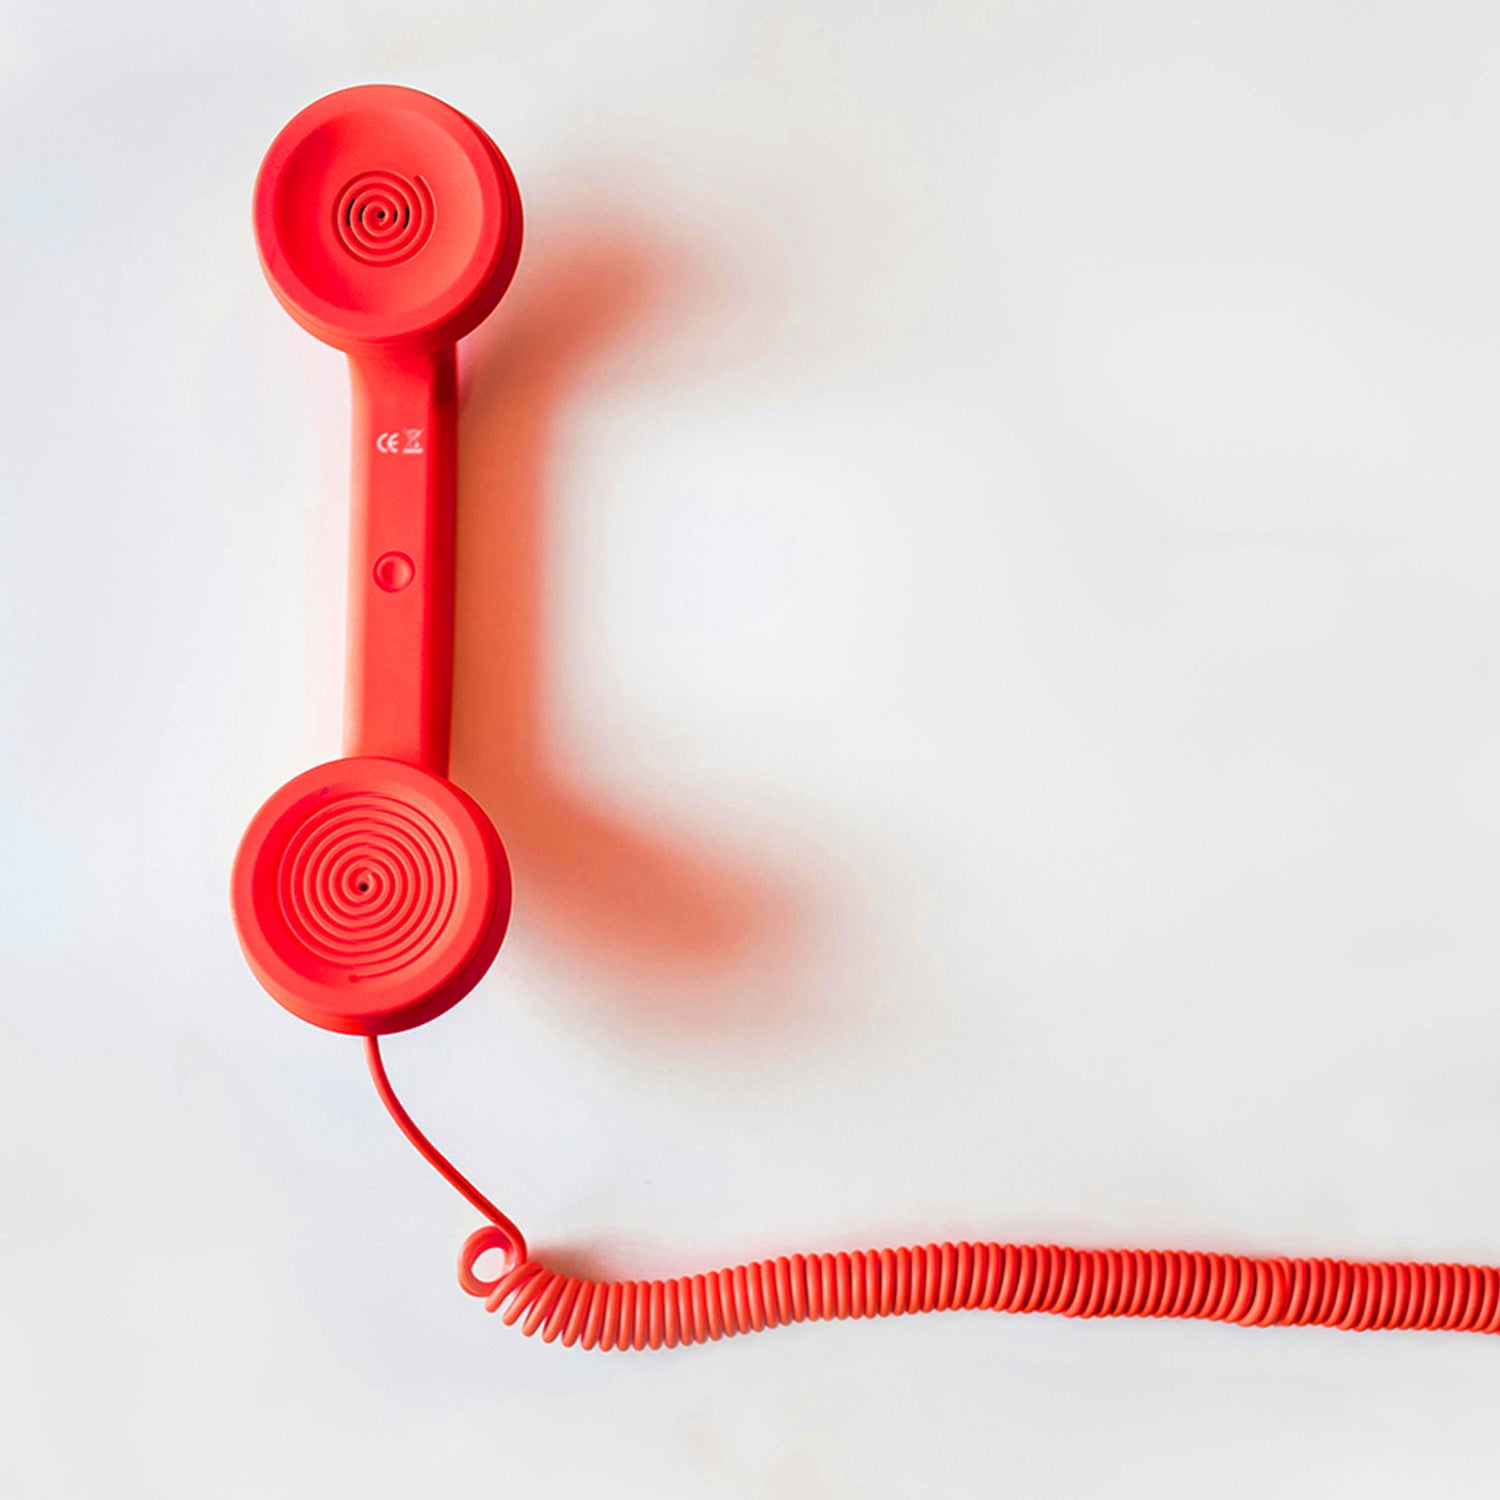 Rotes Telefon mit langem Kabel, repräsentiert die Service-Hotline von ETH Meditec. Ein Symbol für schnelle und kompetente Unterstützung bei medizinischen Fragen und Anliegen